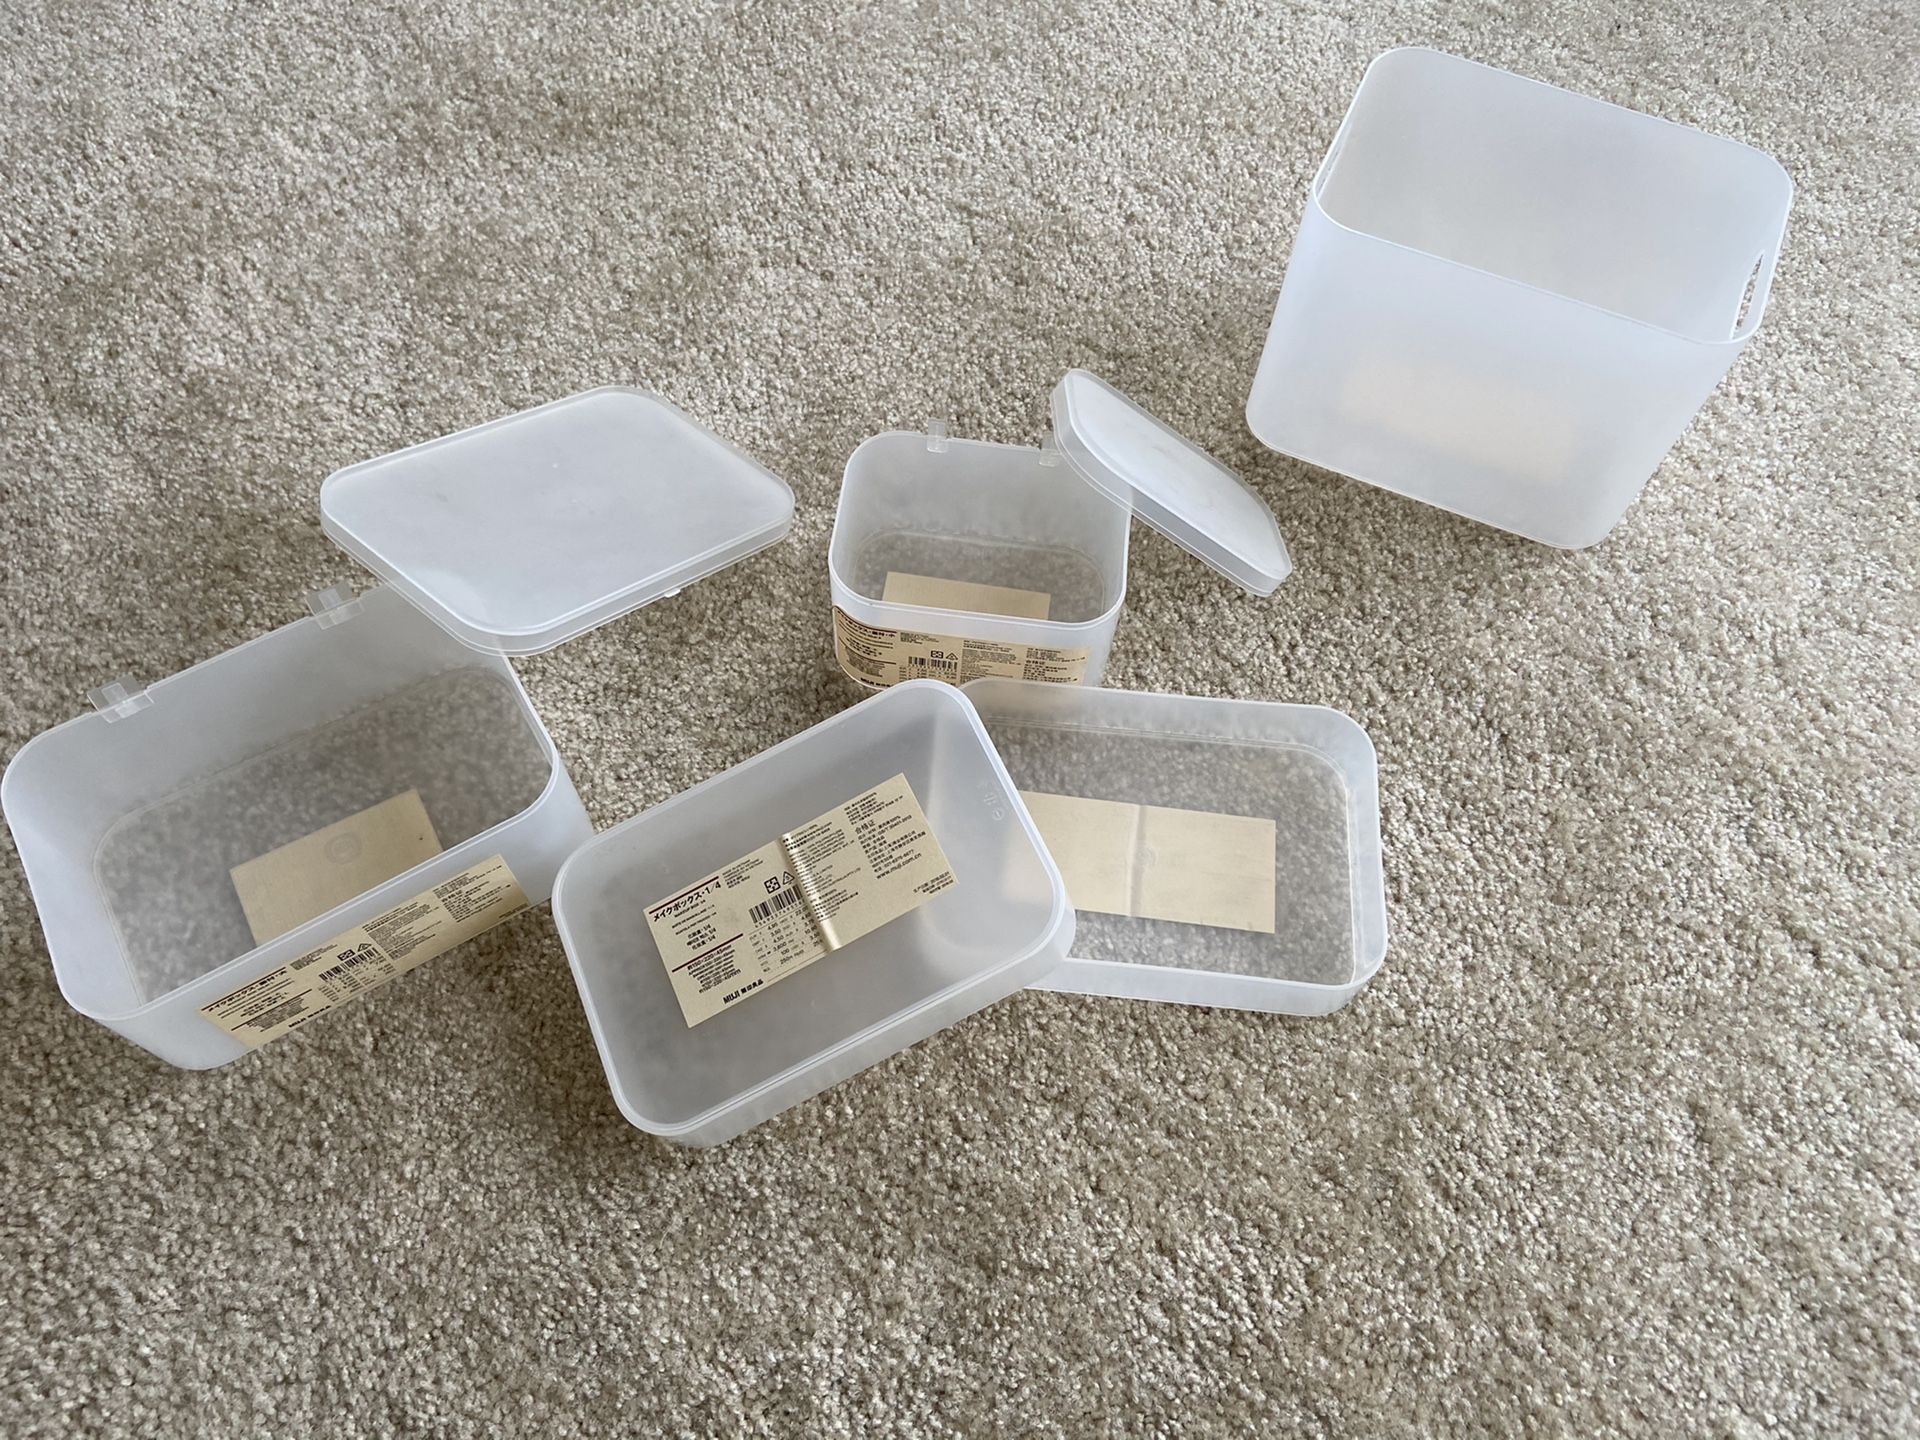 Muji box, storage box, container